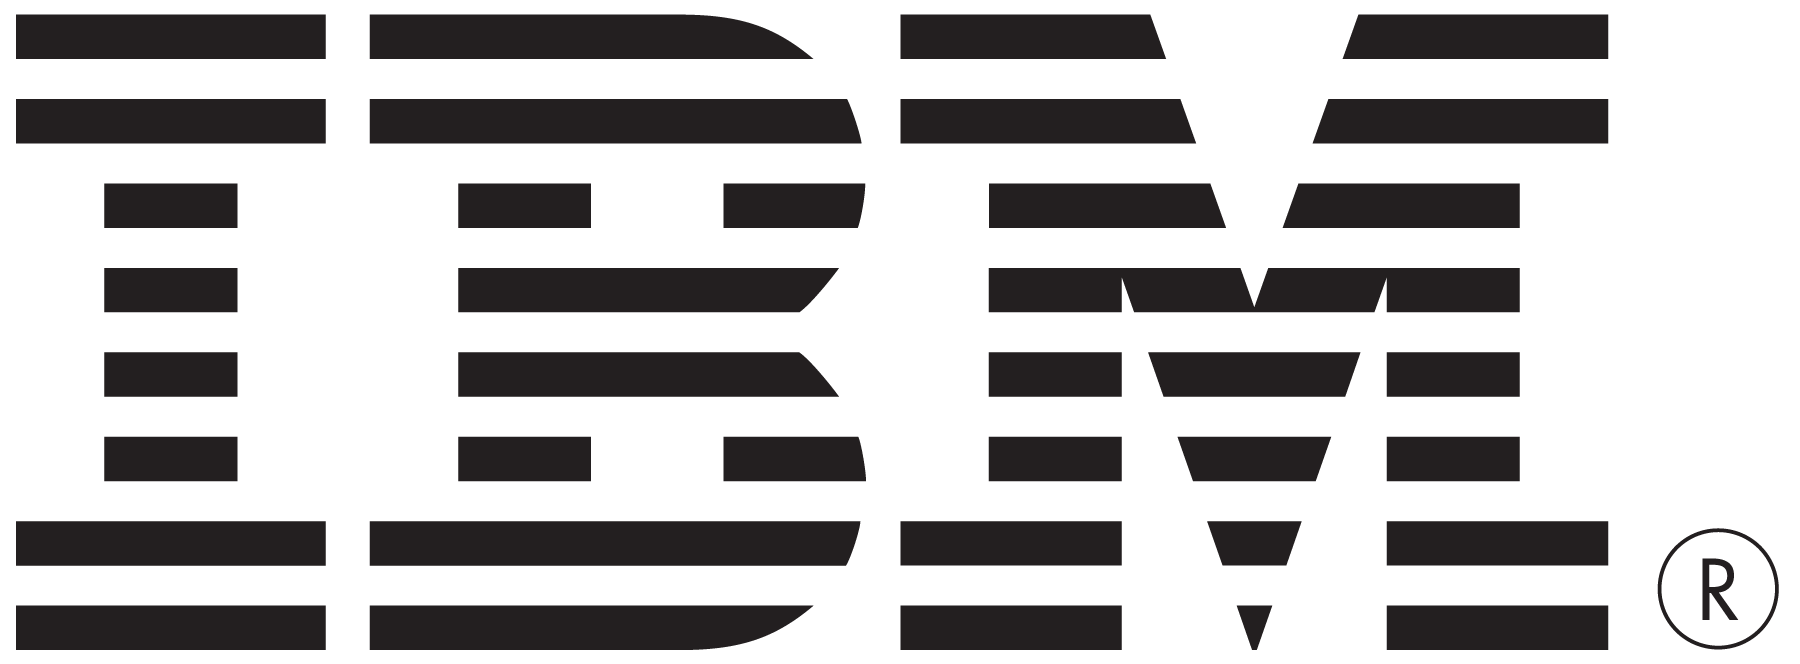 IBM logos PNG images free download, IBM logo PNG.